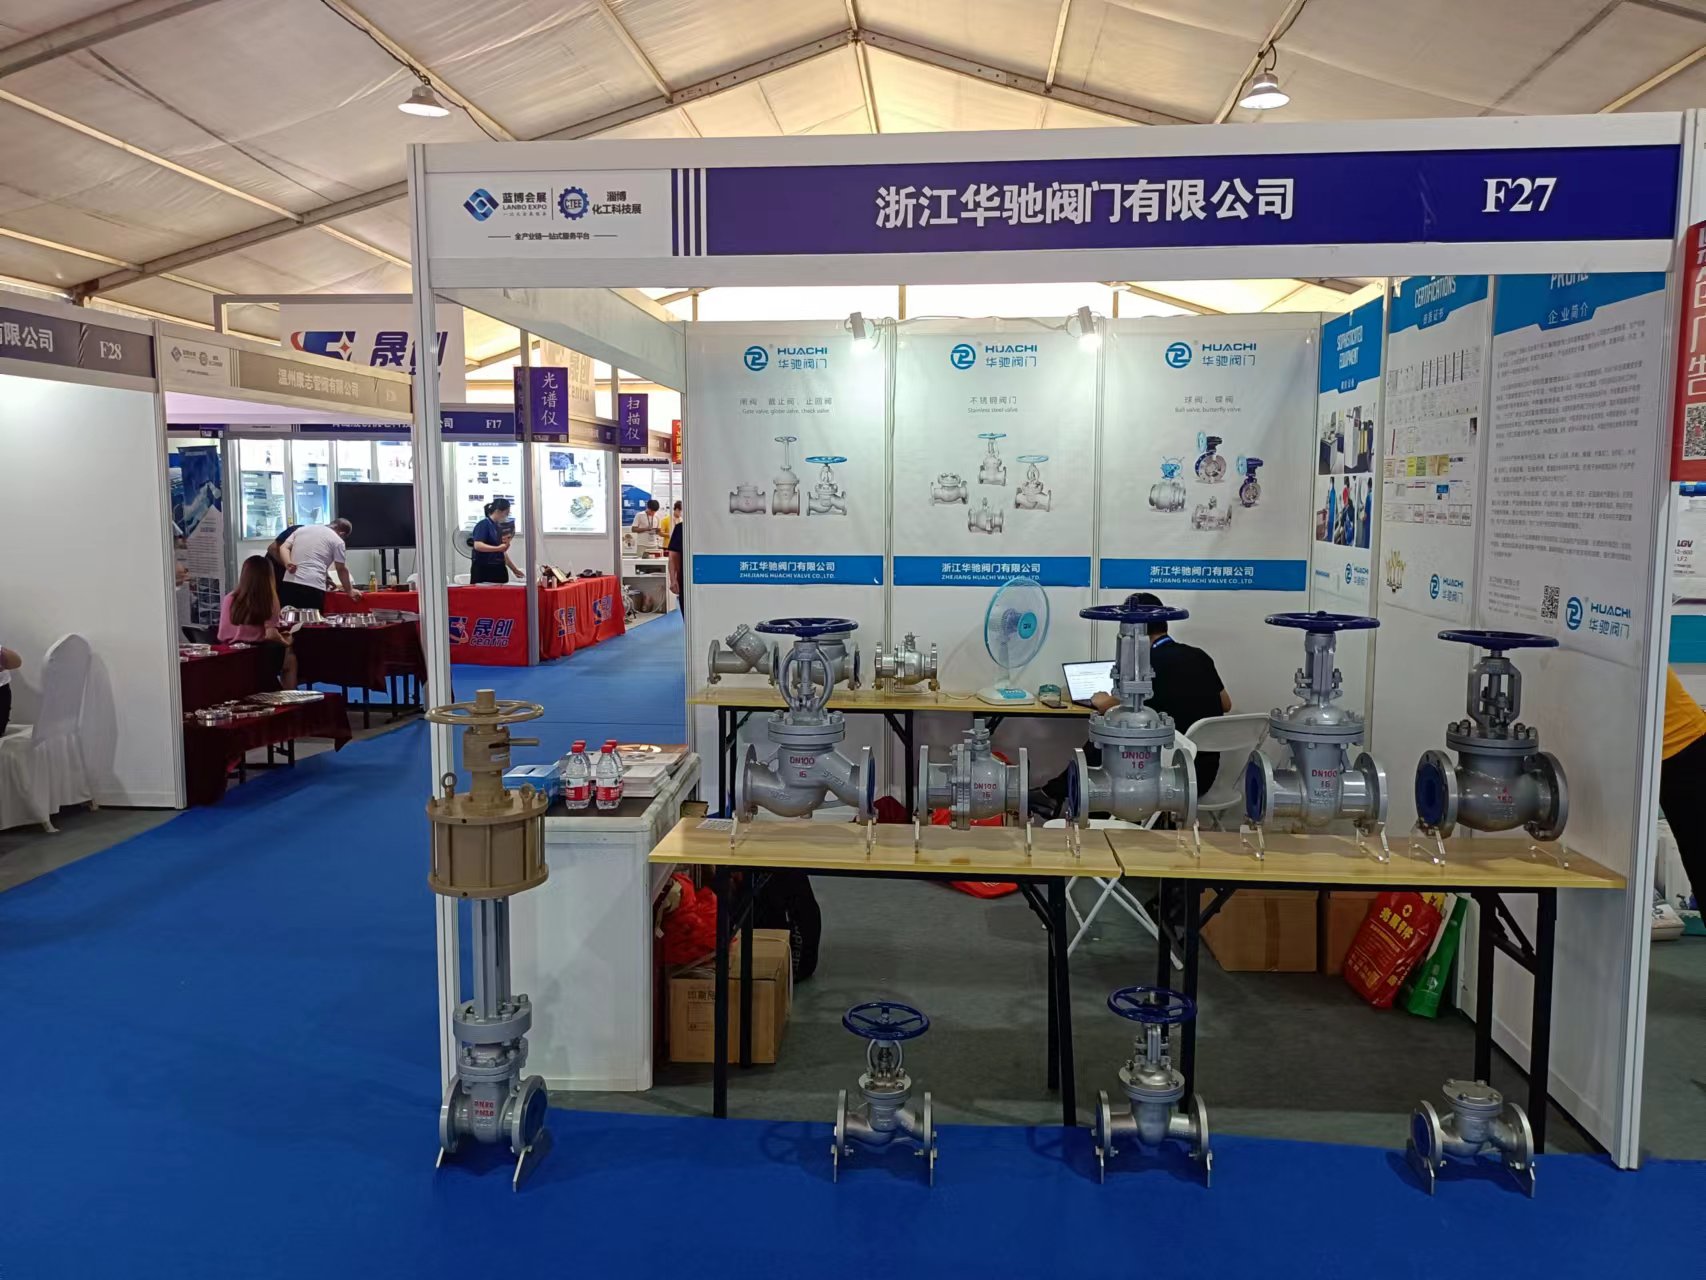 Zhejiang Huachi Valve Co., Ltd. Zibo রাসায়নিক শিল্প প্রদর্শনী 2022 China (Zibo) আন্তর্জাতিক রাসায়নিক প্রযুক্তি প্রদর্শনীতে অংশগ্রহণ করেছে